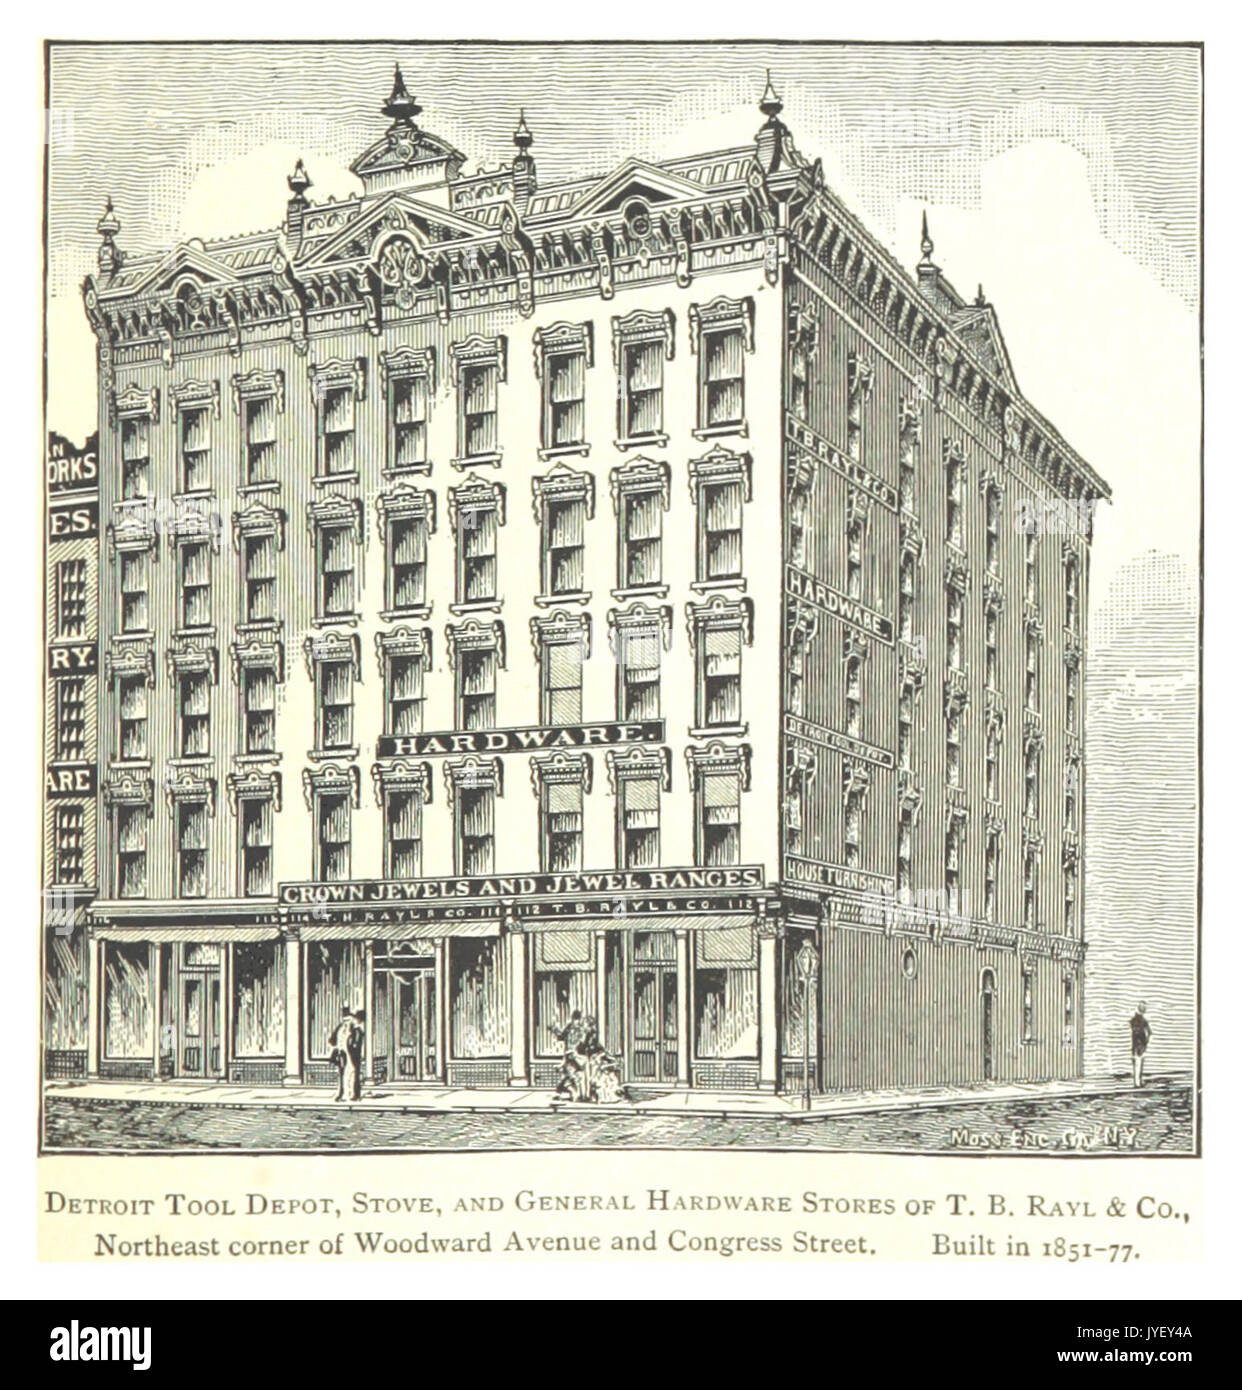 Imprenditore(1884) Detroit, p825 ATTREZZO DI DETROIT DEPOT, stufa e generale negozi di hardware di T.B. RAYL & CO. L'angolo nord-est di Woodward Avenue e Congress Street. Costruito nel 1851 77 Foto Stock